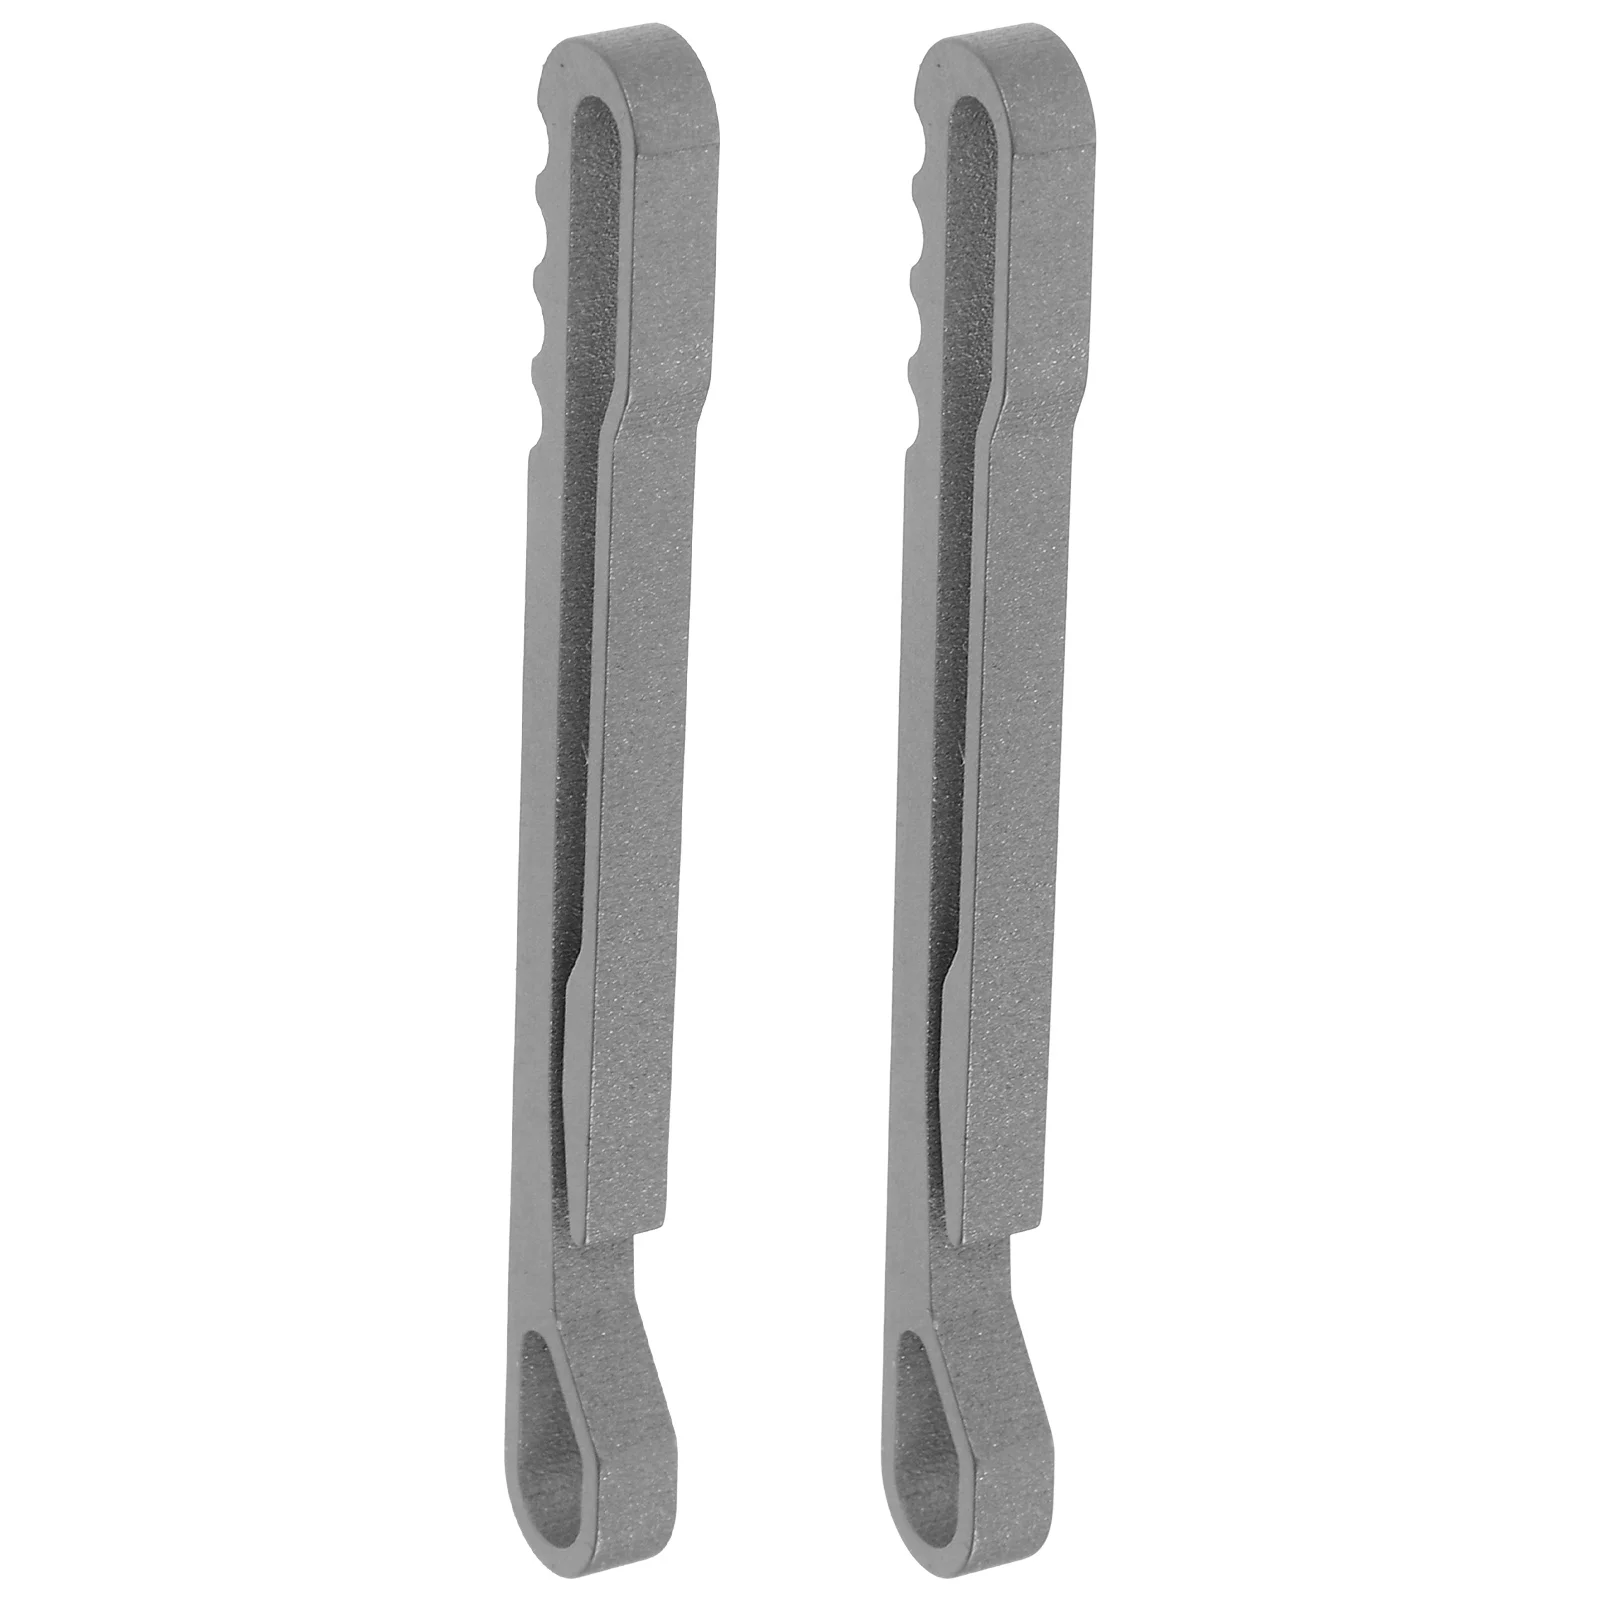 

2 PCS Corkscrew Keychain Pocket Clip Buckle Spring Utility Snap Belt Clips Hook Carabiner